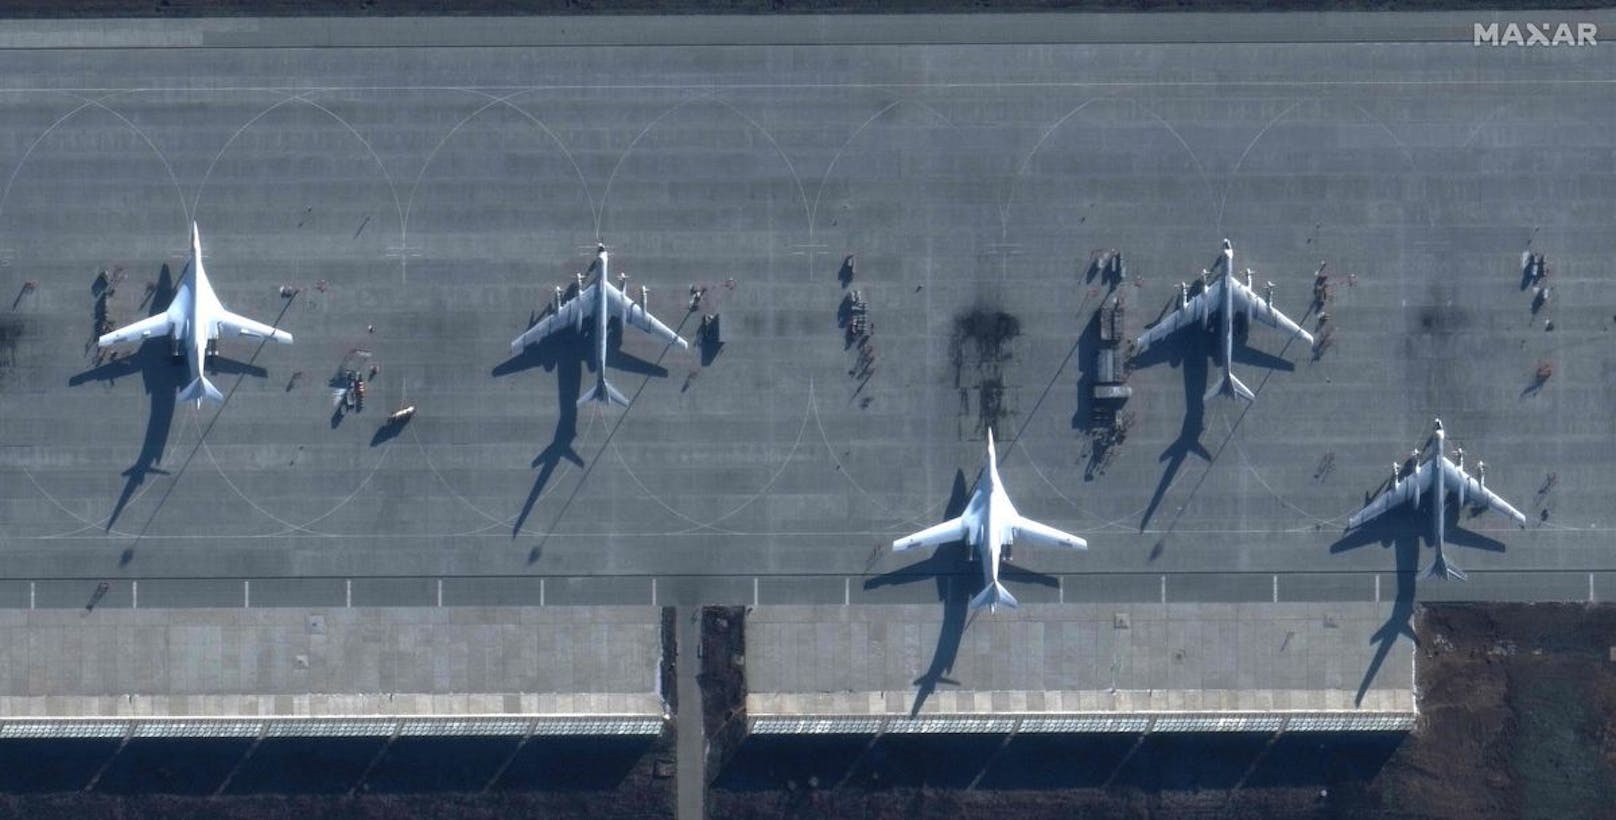 Fotos zeigen Russen-Flugplatz nach Drohnen-Attacke